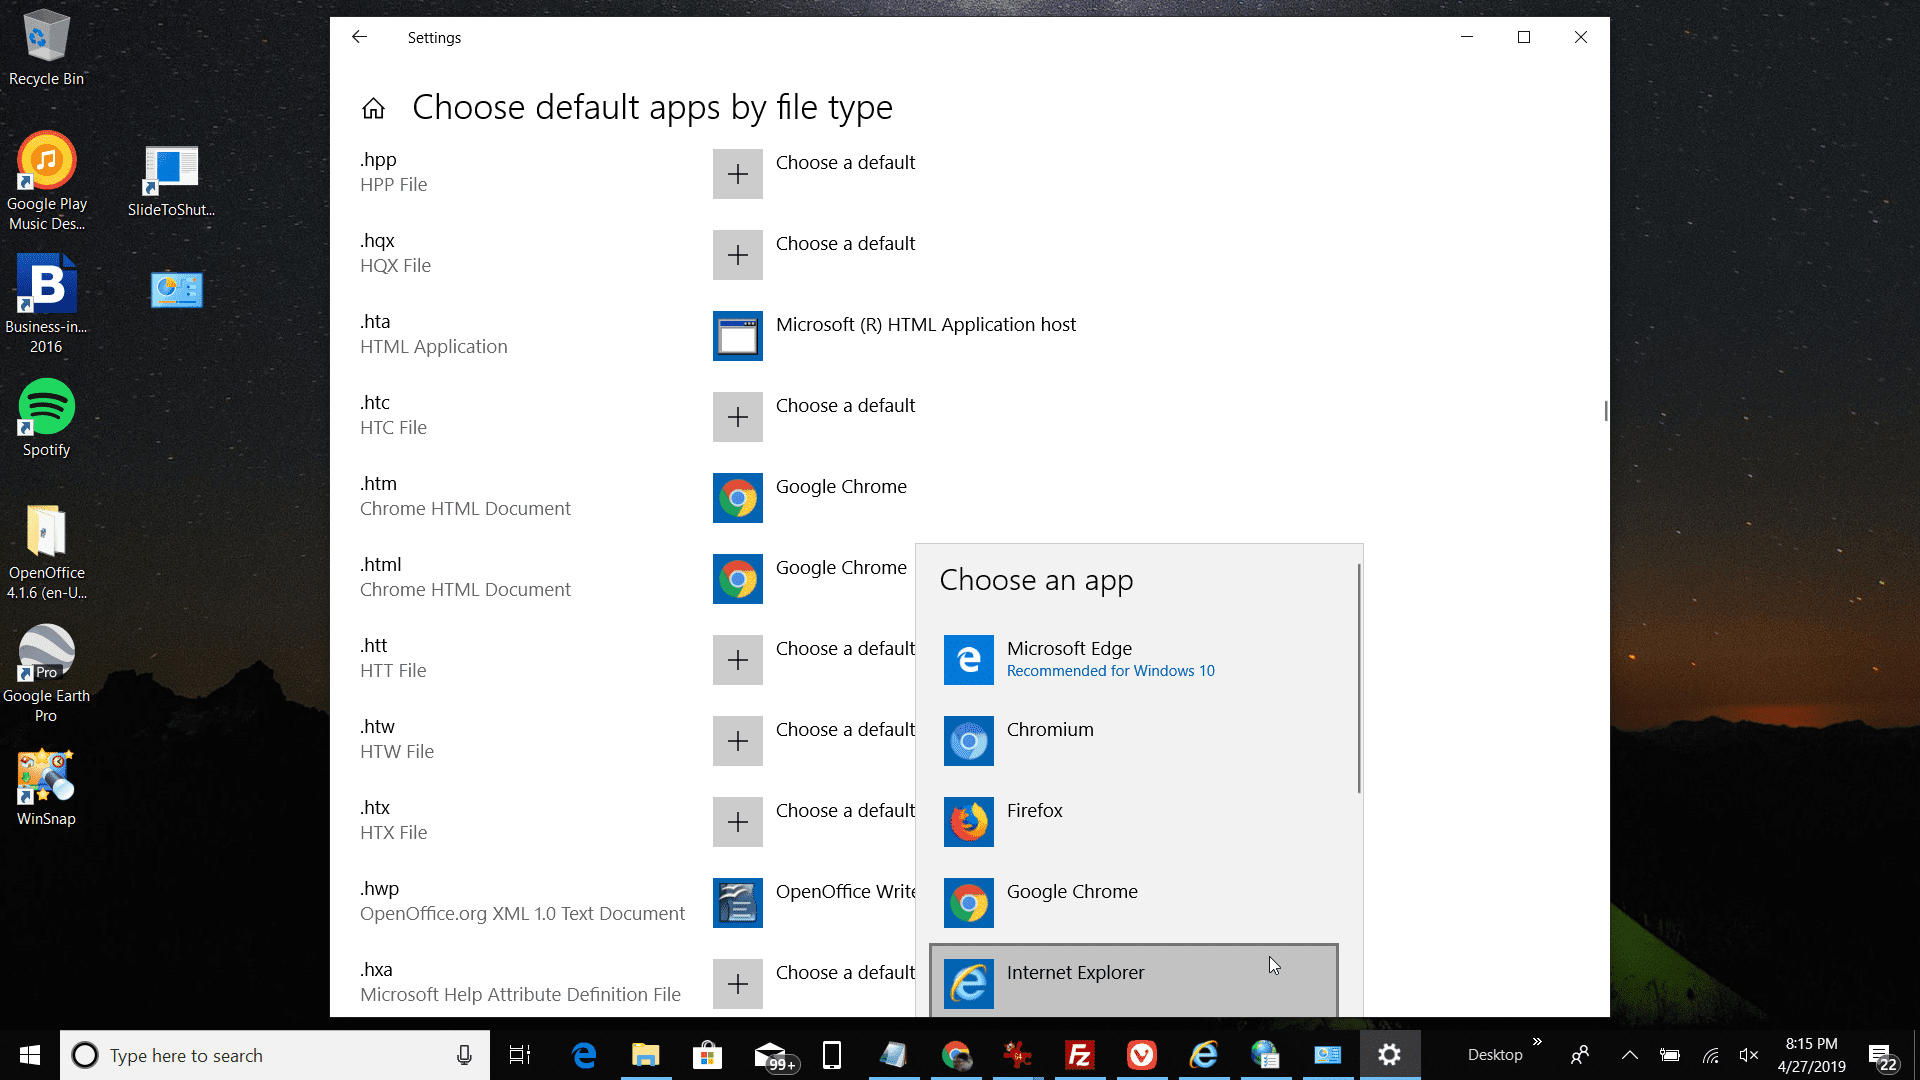 Снимок экрана выбора Internet Explorer из списка приложений по умолчанию